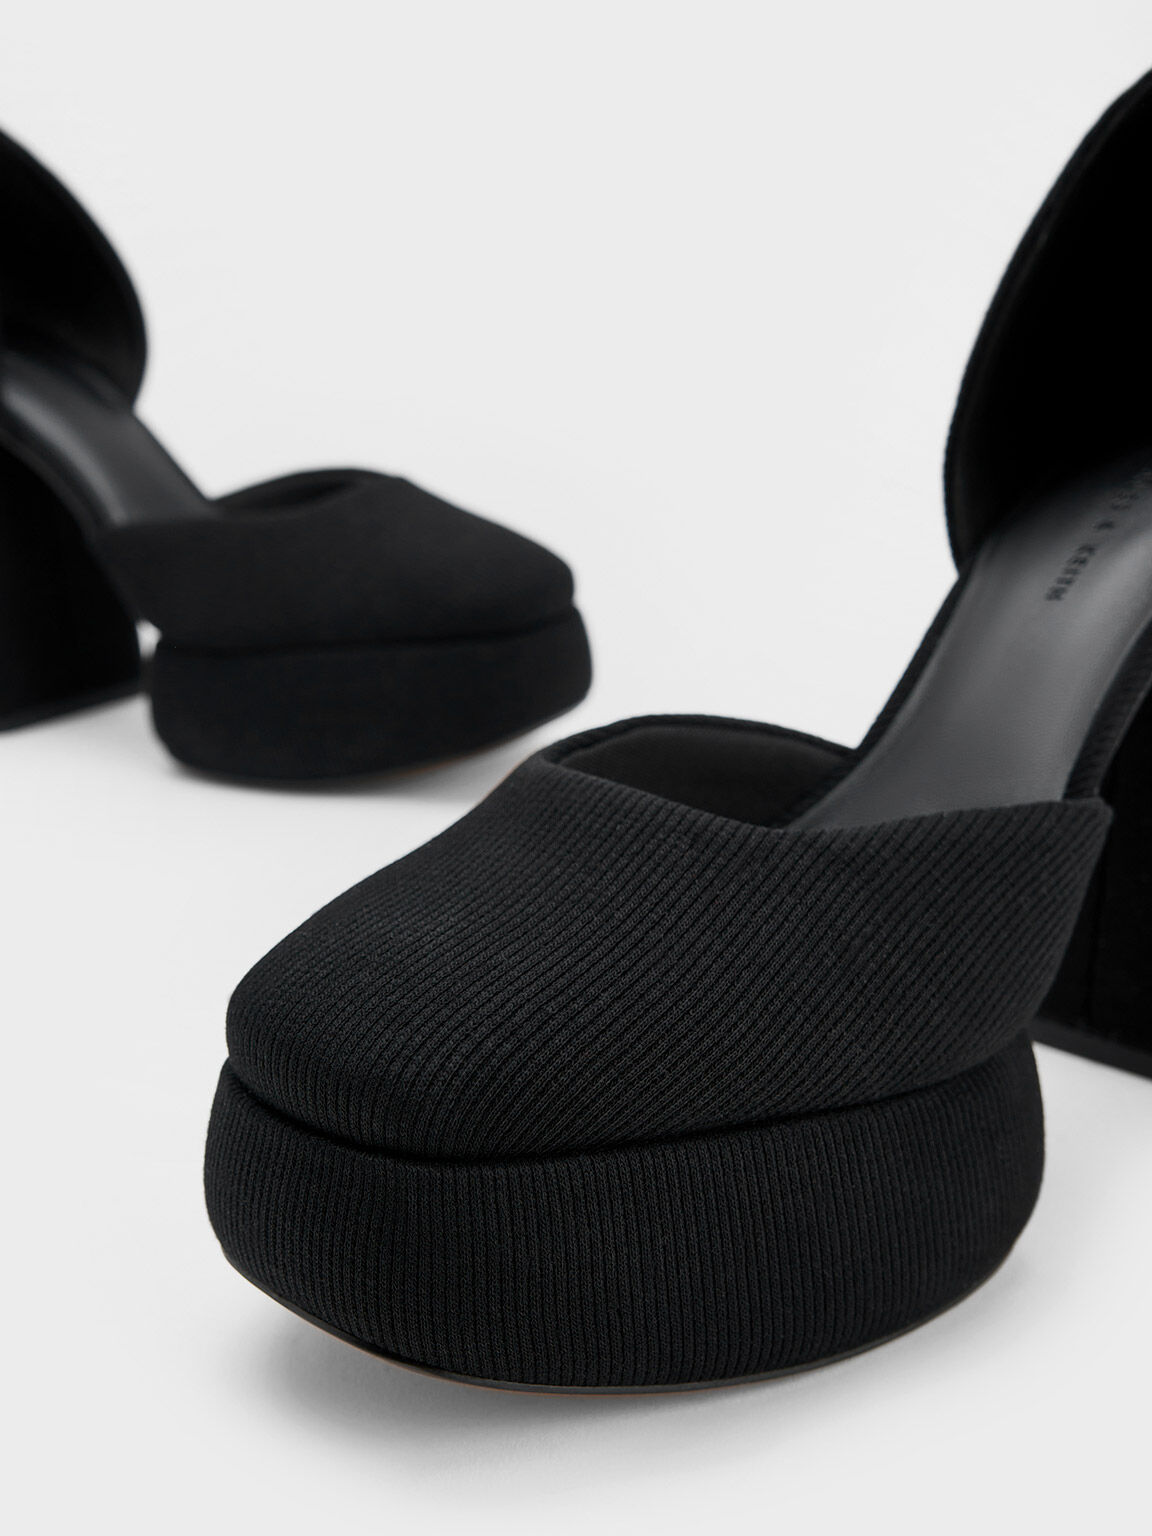 Zapatos D'Orsay Tejidos con Plataforma y Hebilla, Negro, hi-res